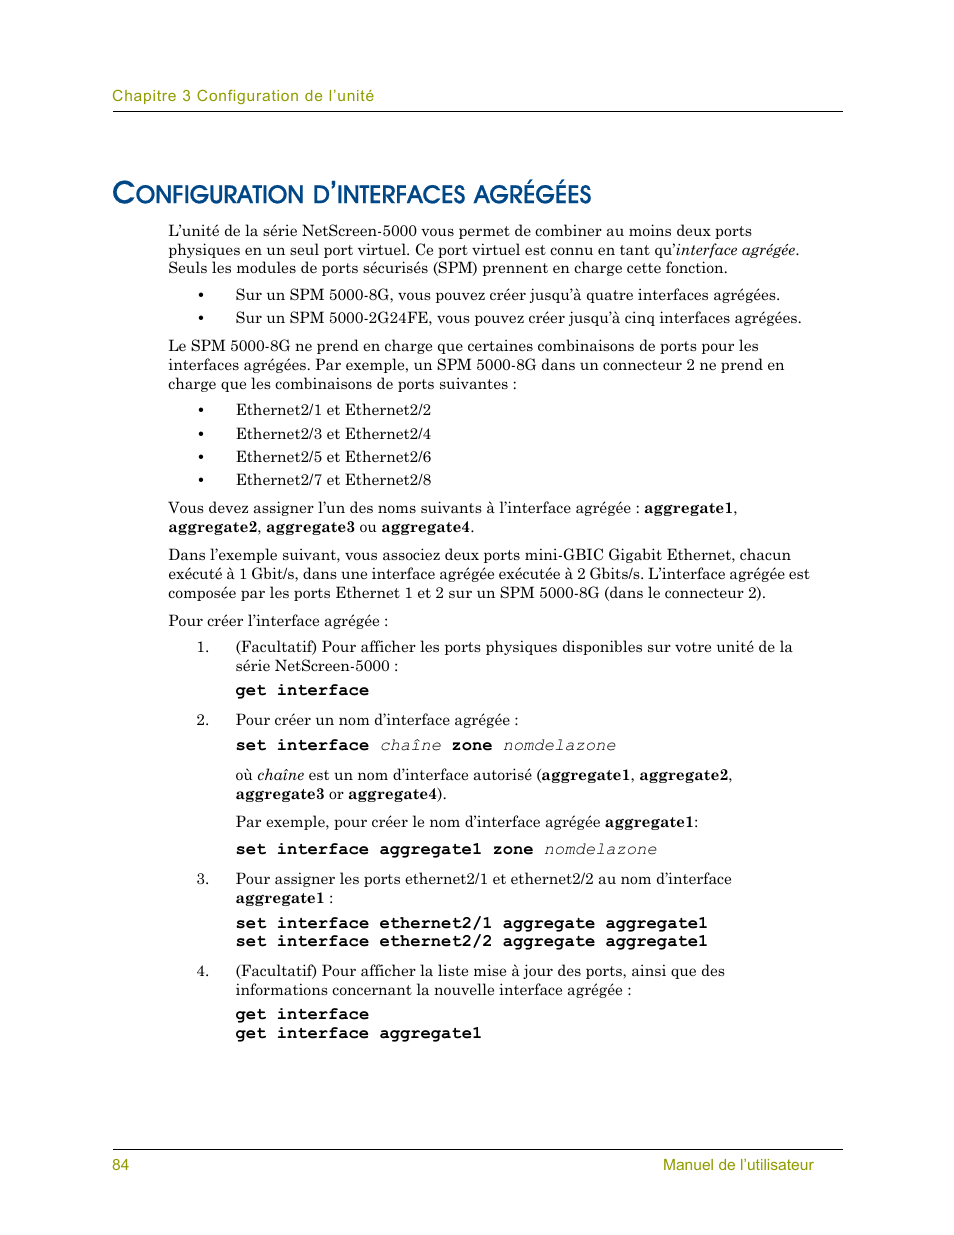 Configuration d’interfaces agrégées, Onfiguration, Interfaces | Agrégées | Juniper Networks 5000 SERIES Manuel d'utilisation | Page 96 / 116